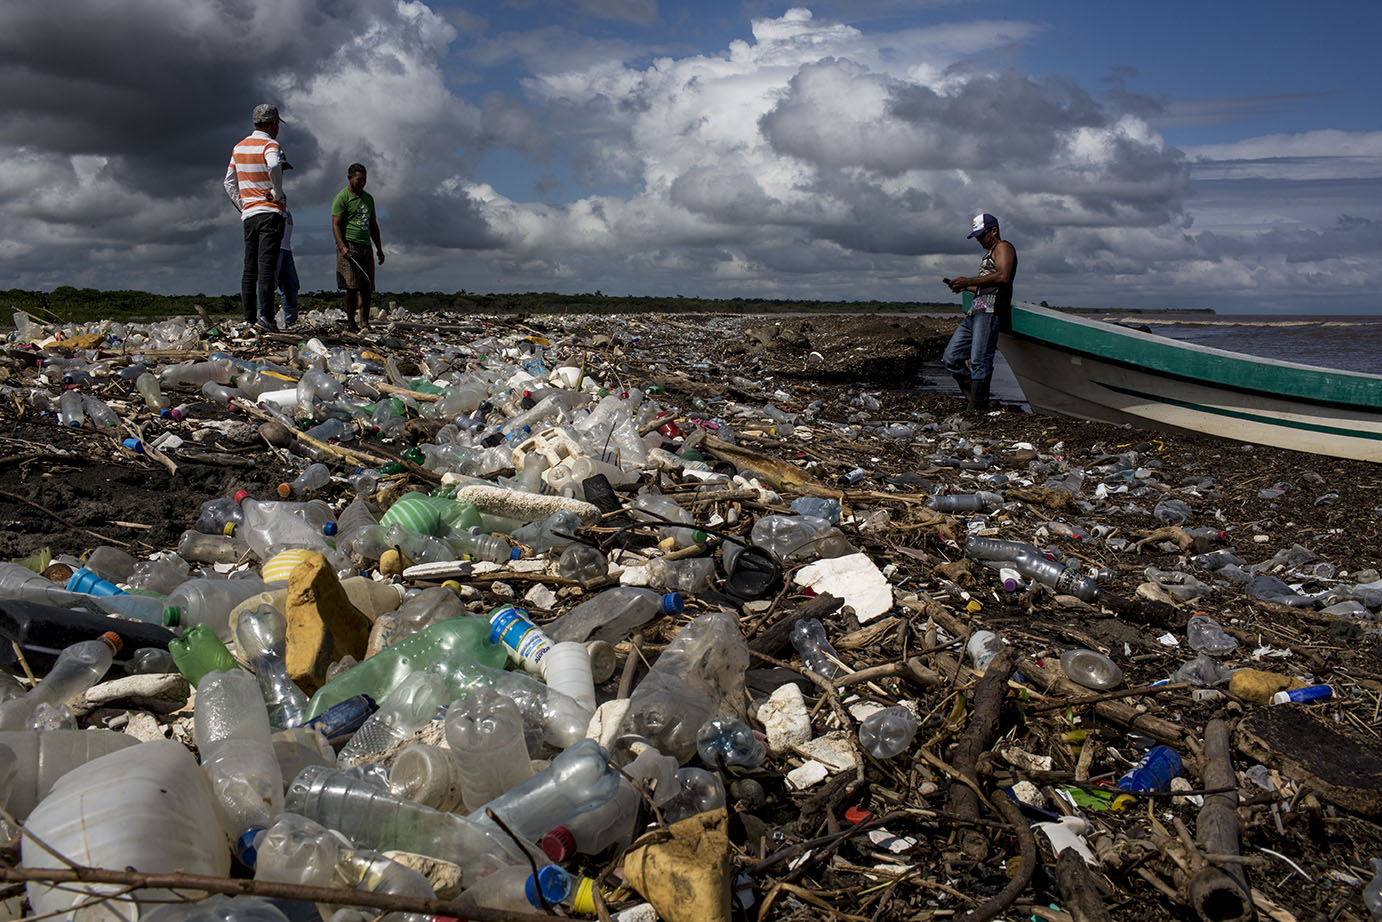 Una parte de playa de la aldea El Quetzalito, Puerto Barrios, completamente invadida por desechos de plástico traídos por el río Motagua. Noviembre 2019. Simone Dalmasso